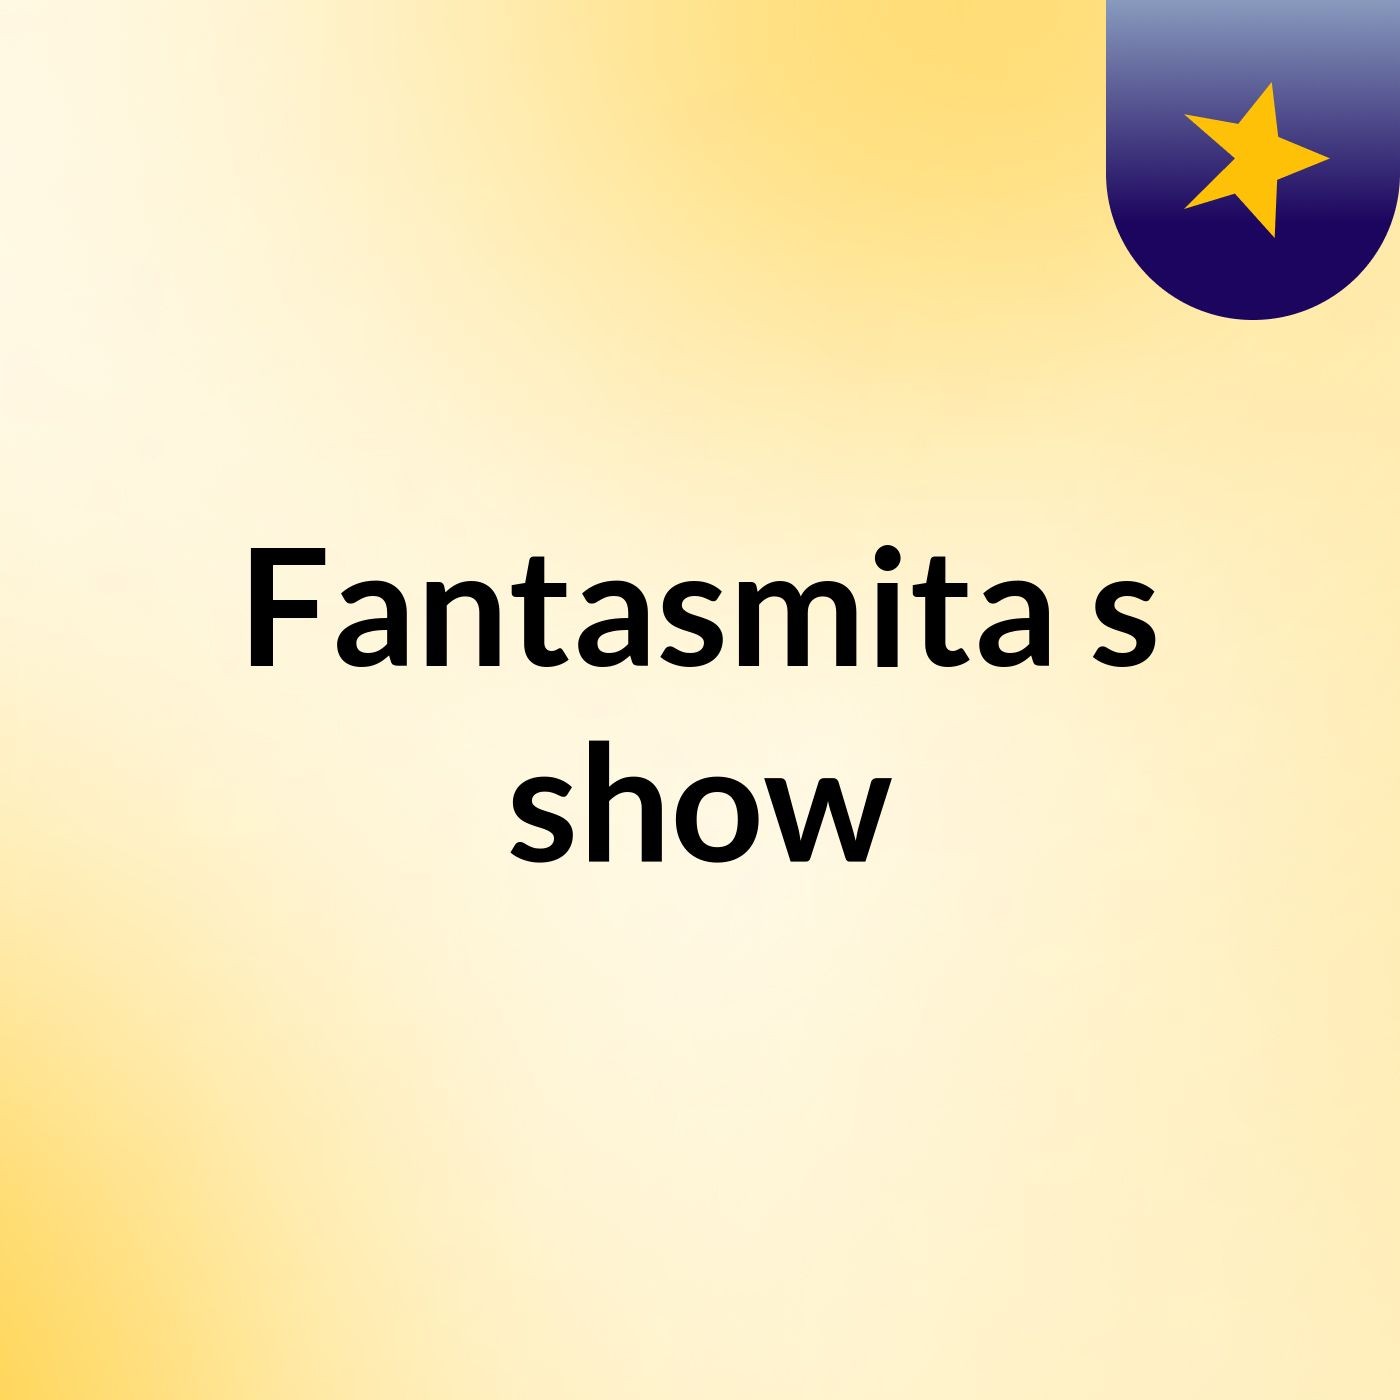 Fantasmita's show